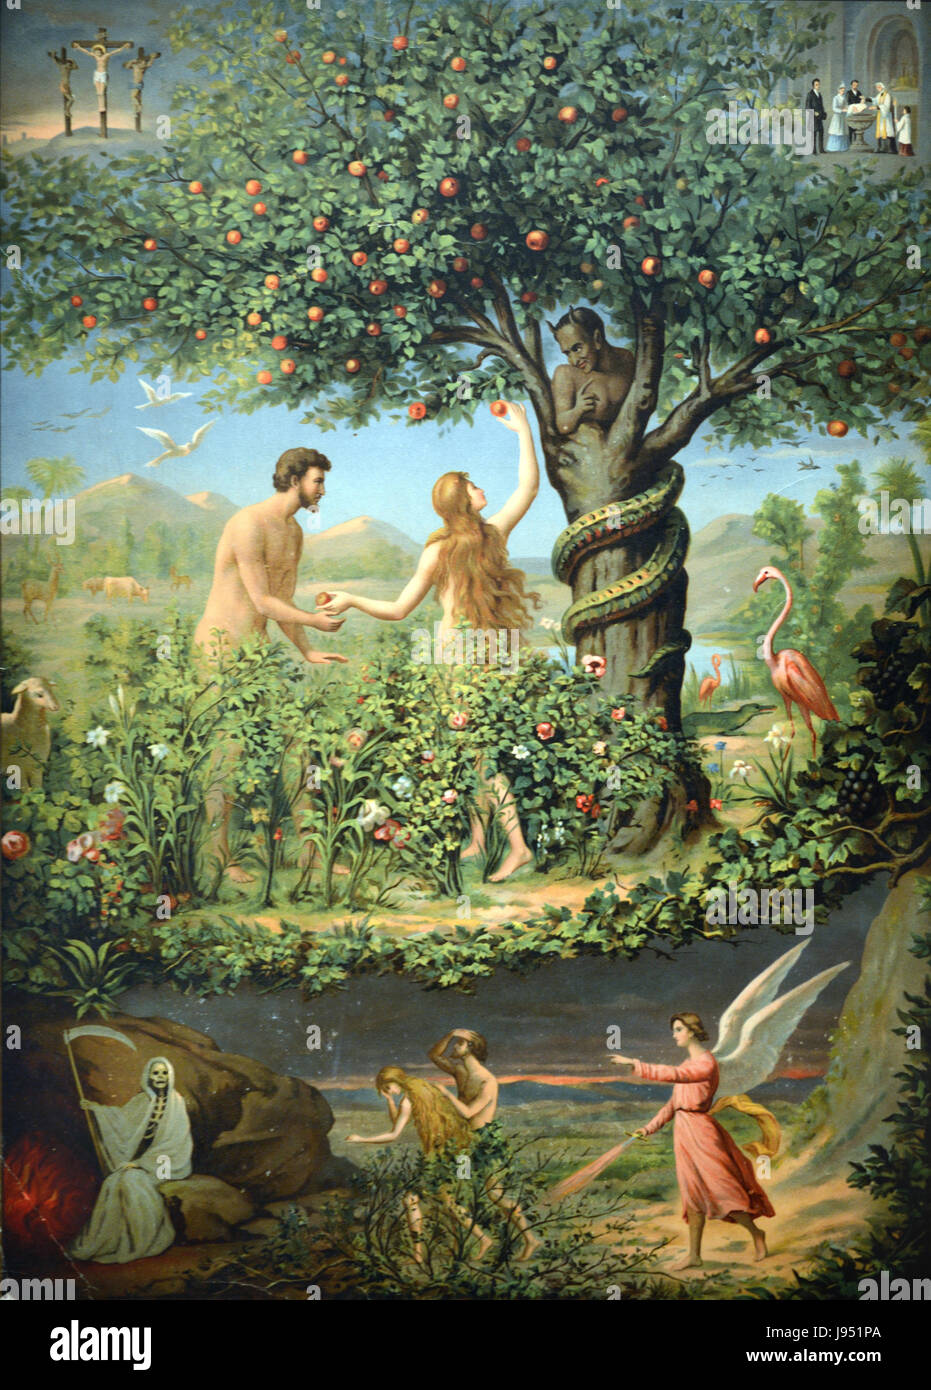 Erbsünde, Adam und Eva im Garten Eden späten c19th Chromolithographie Stockfoto